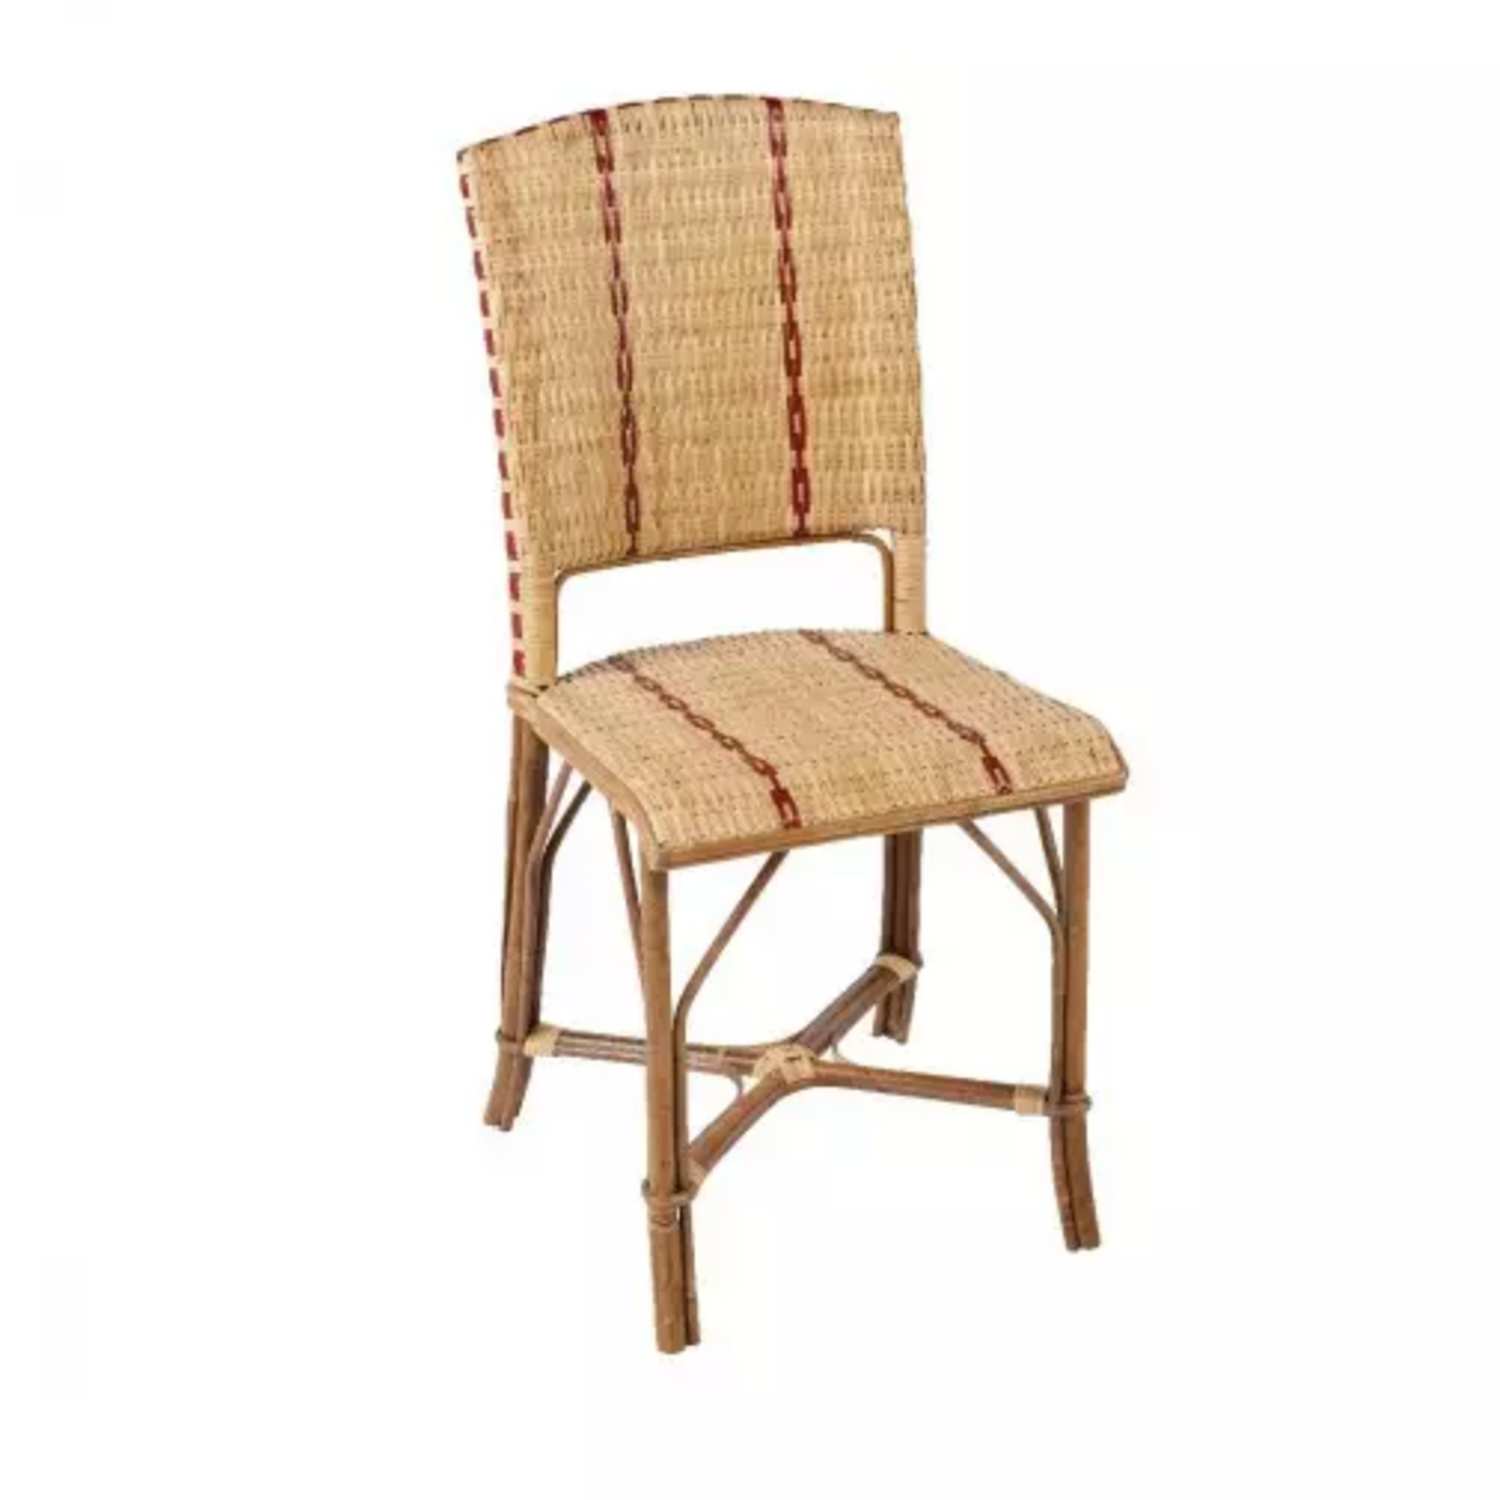 Bagatela Chair in Rattan